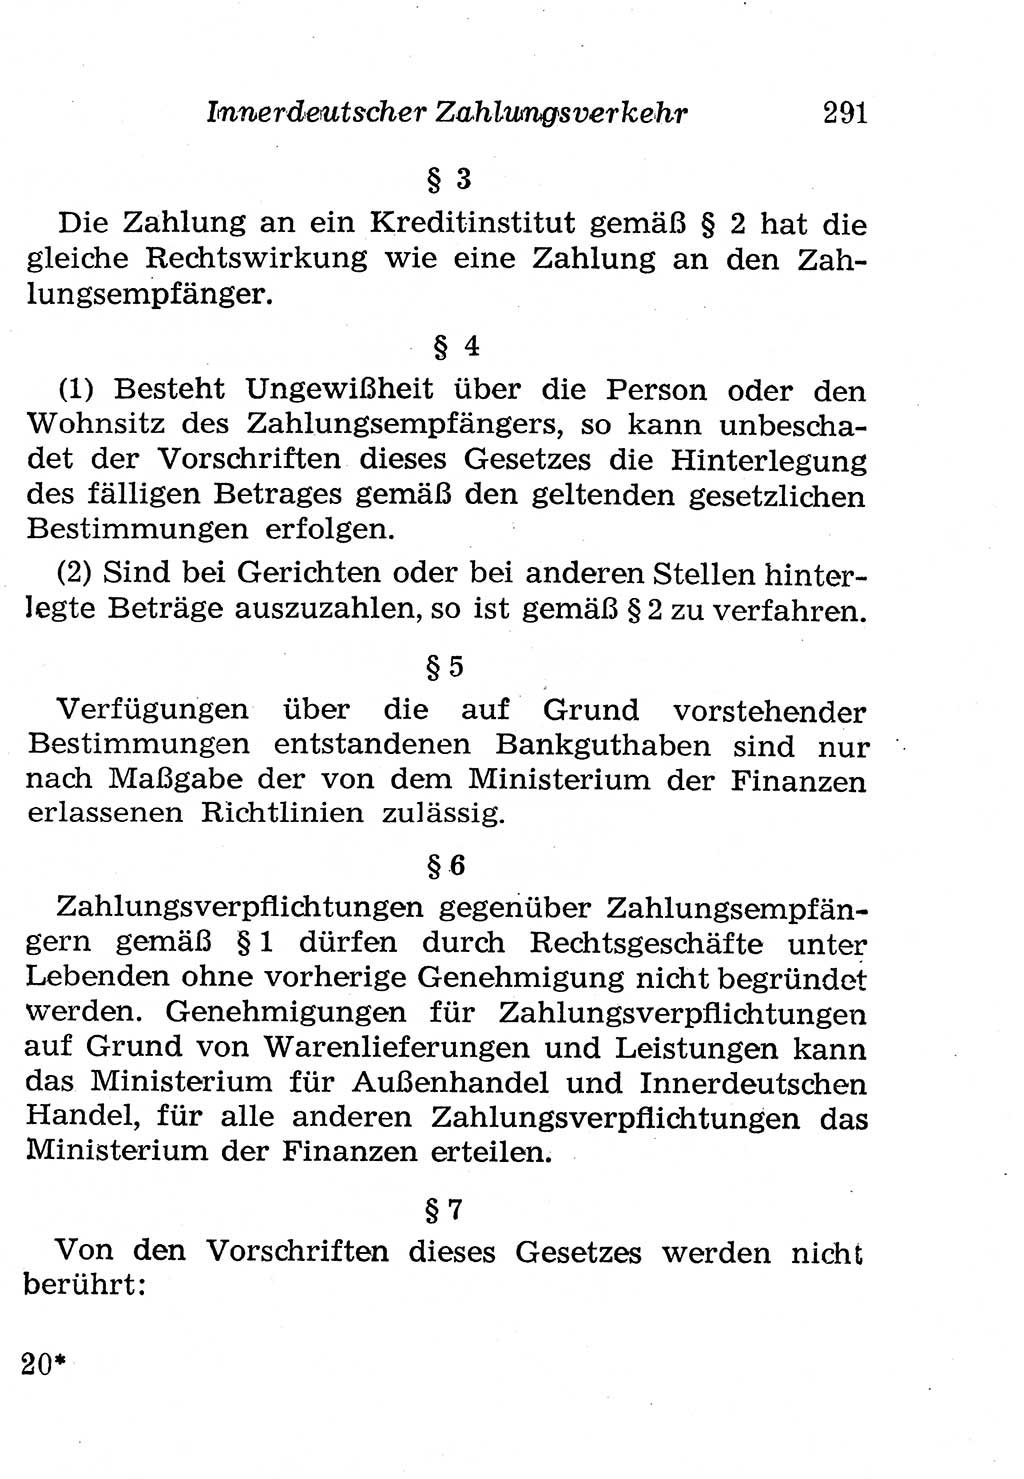 Strafgesetzbuch (StGB) und andere Strafgesetze [Deutsche Demokratische Republik (DDR)] 1958, Seite 291 (StGB Strafges. DDR 1958, S. 291)